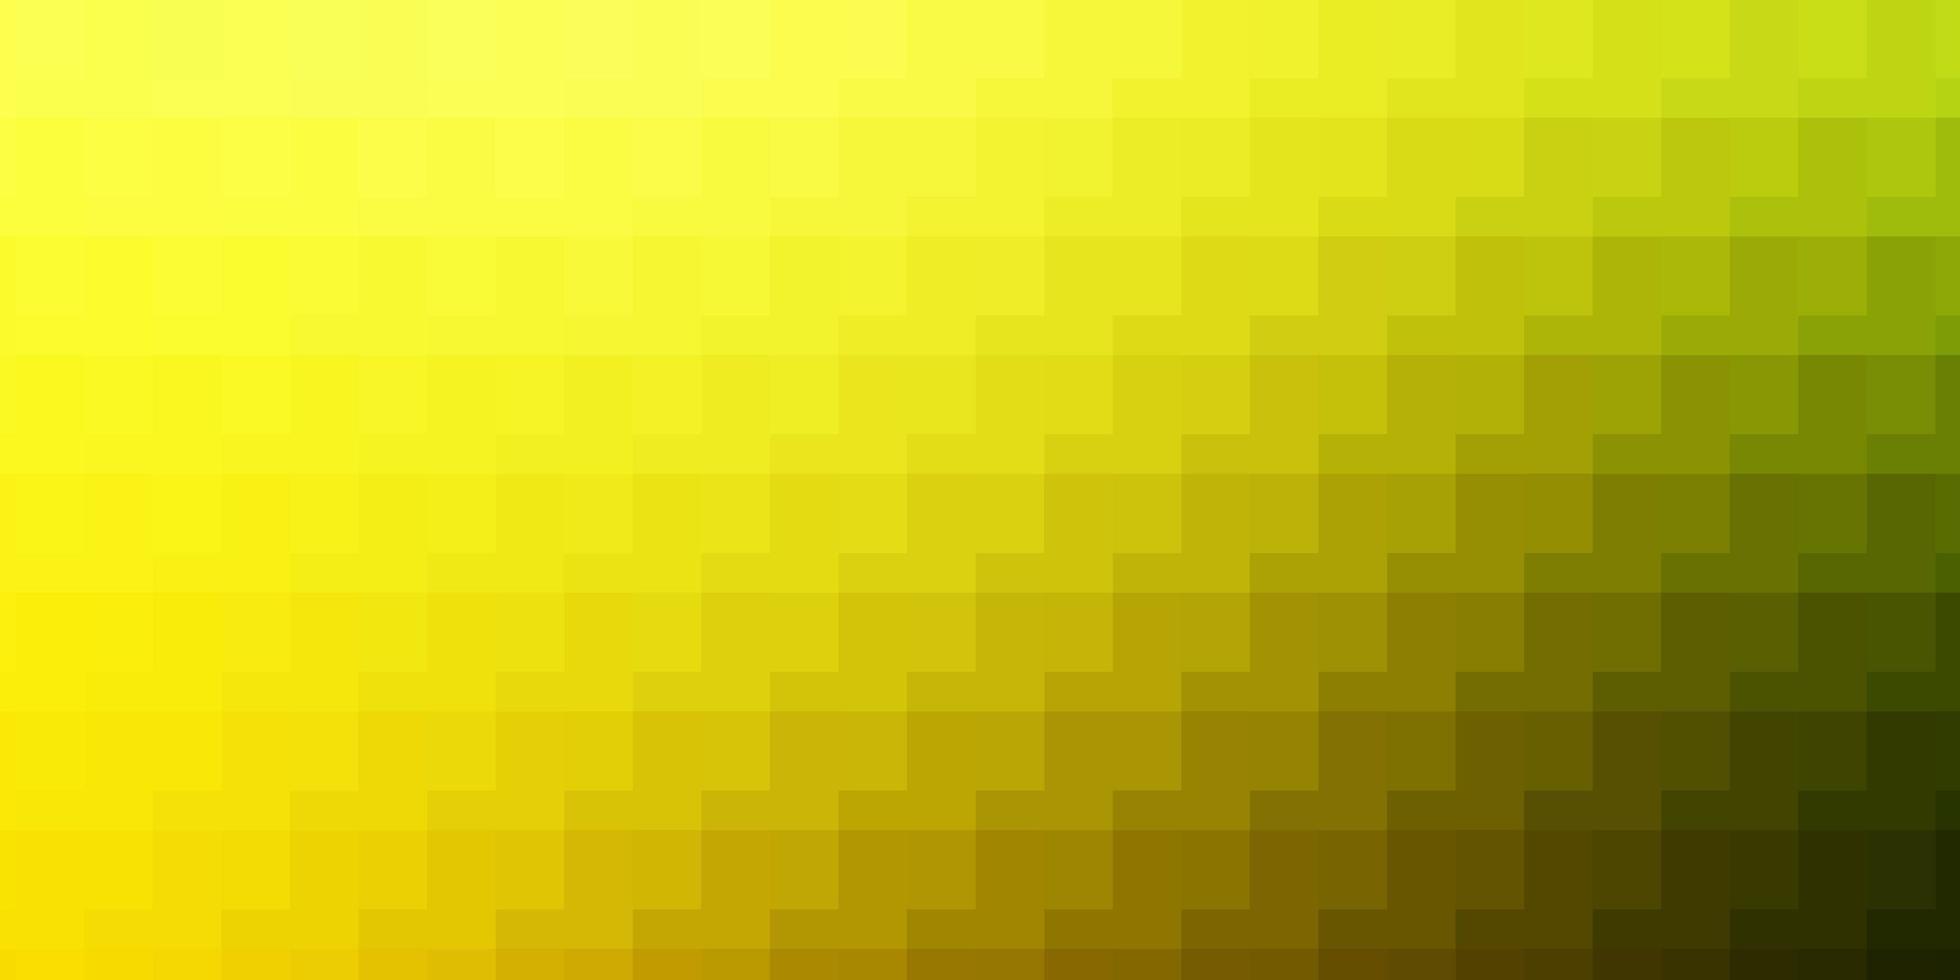 layout de vetor verde e amarelo claro com linhas, retângulos.